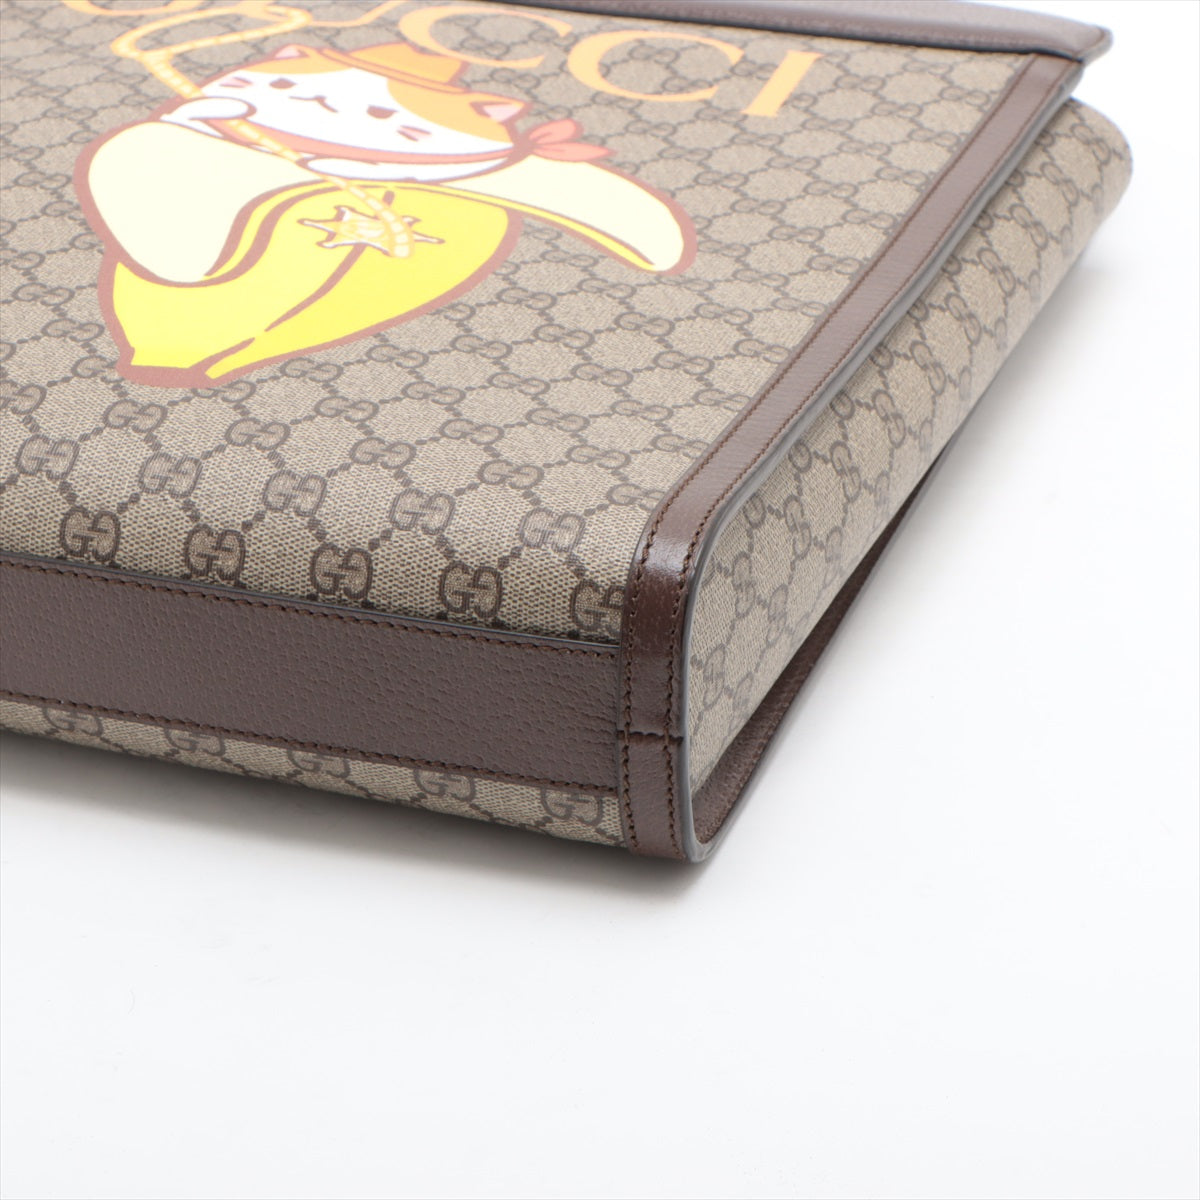 Gucci GG Supreme PVC & leather 2 Way Handbag Brown 703793 Bananya collaboration